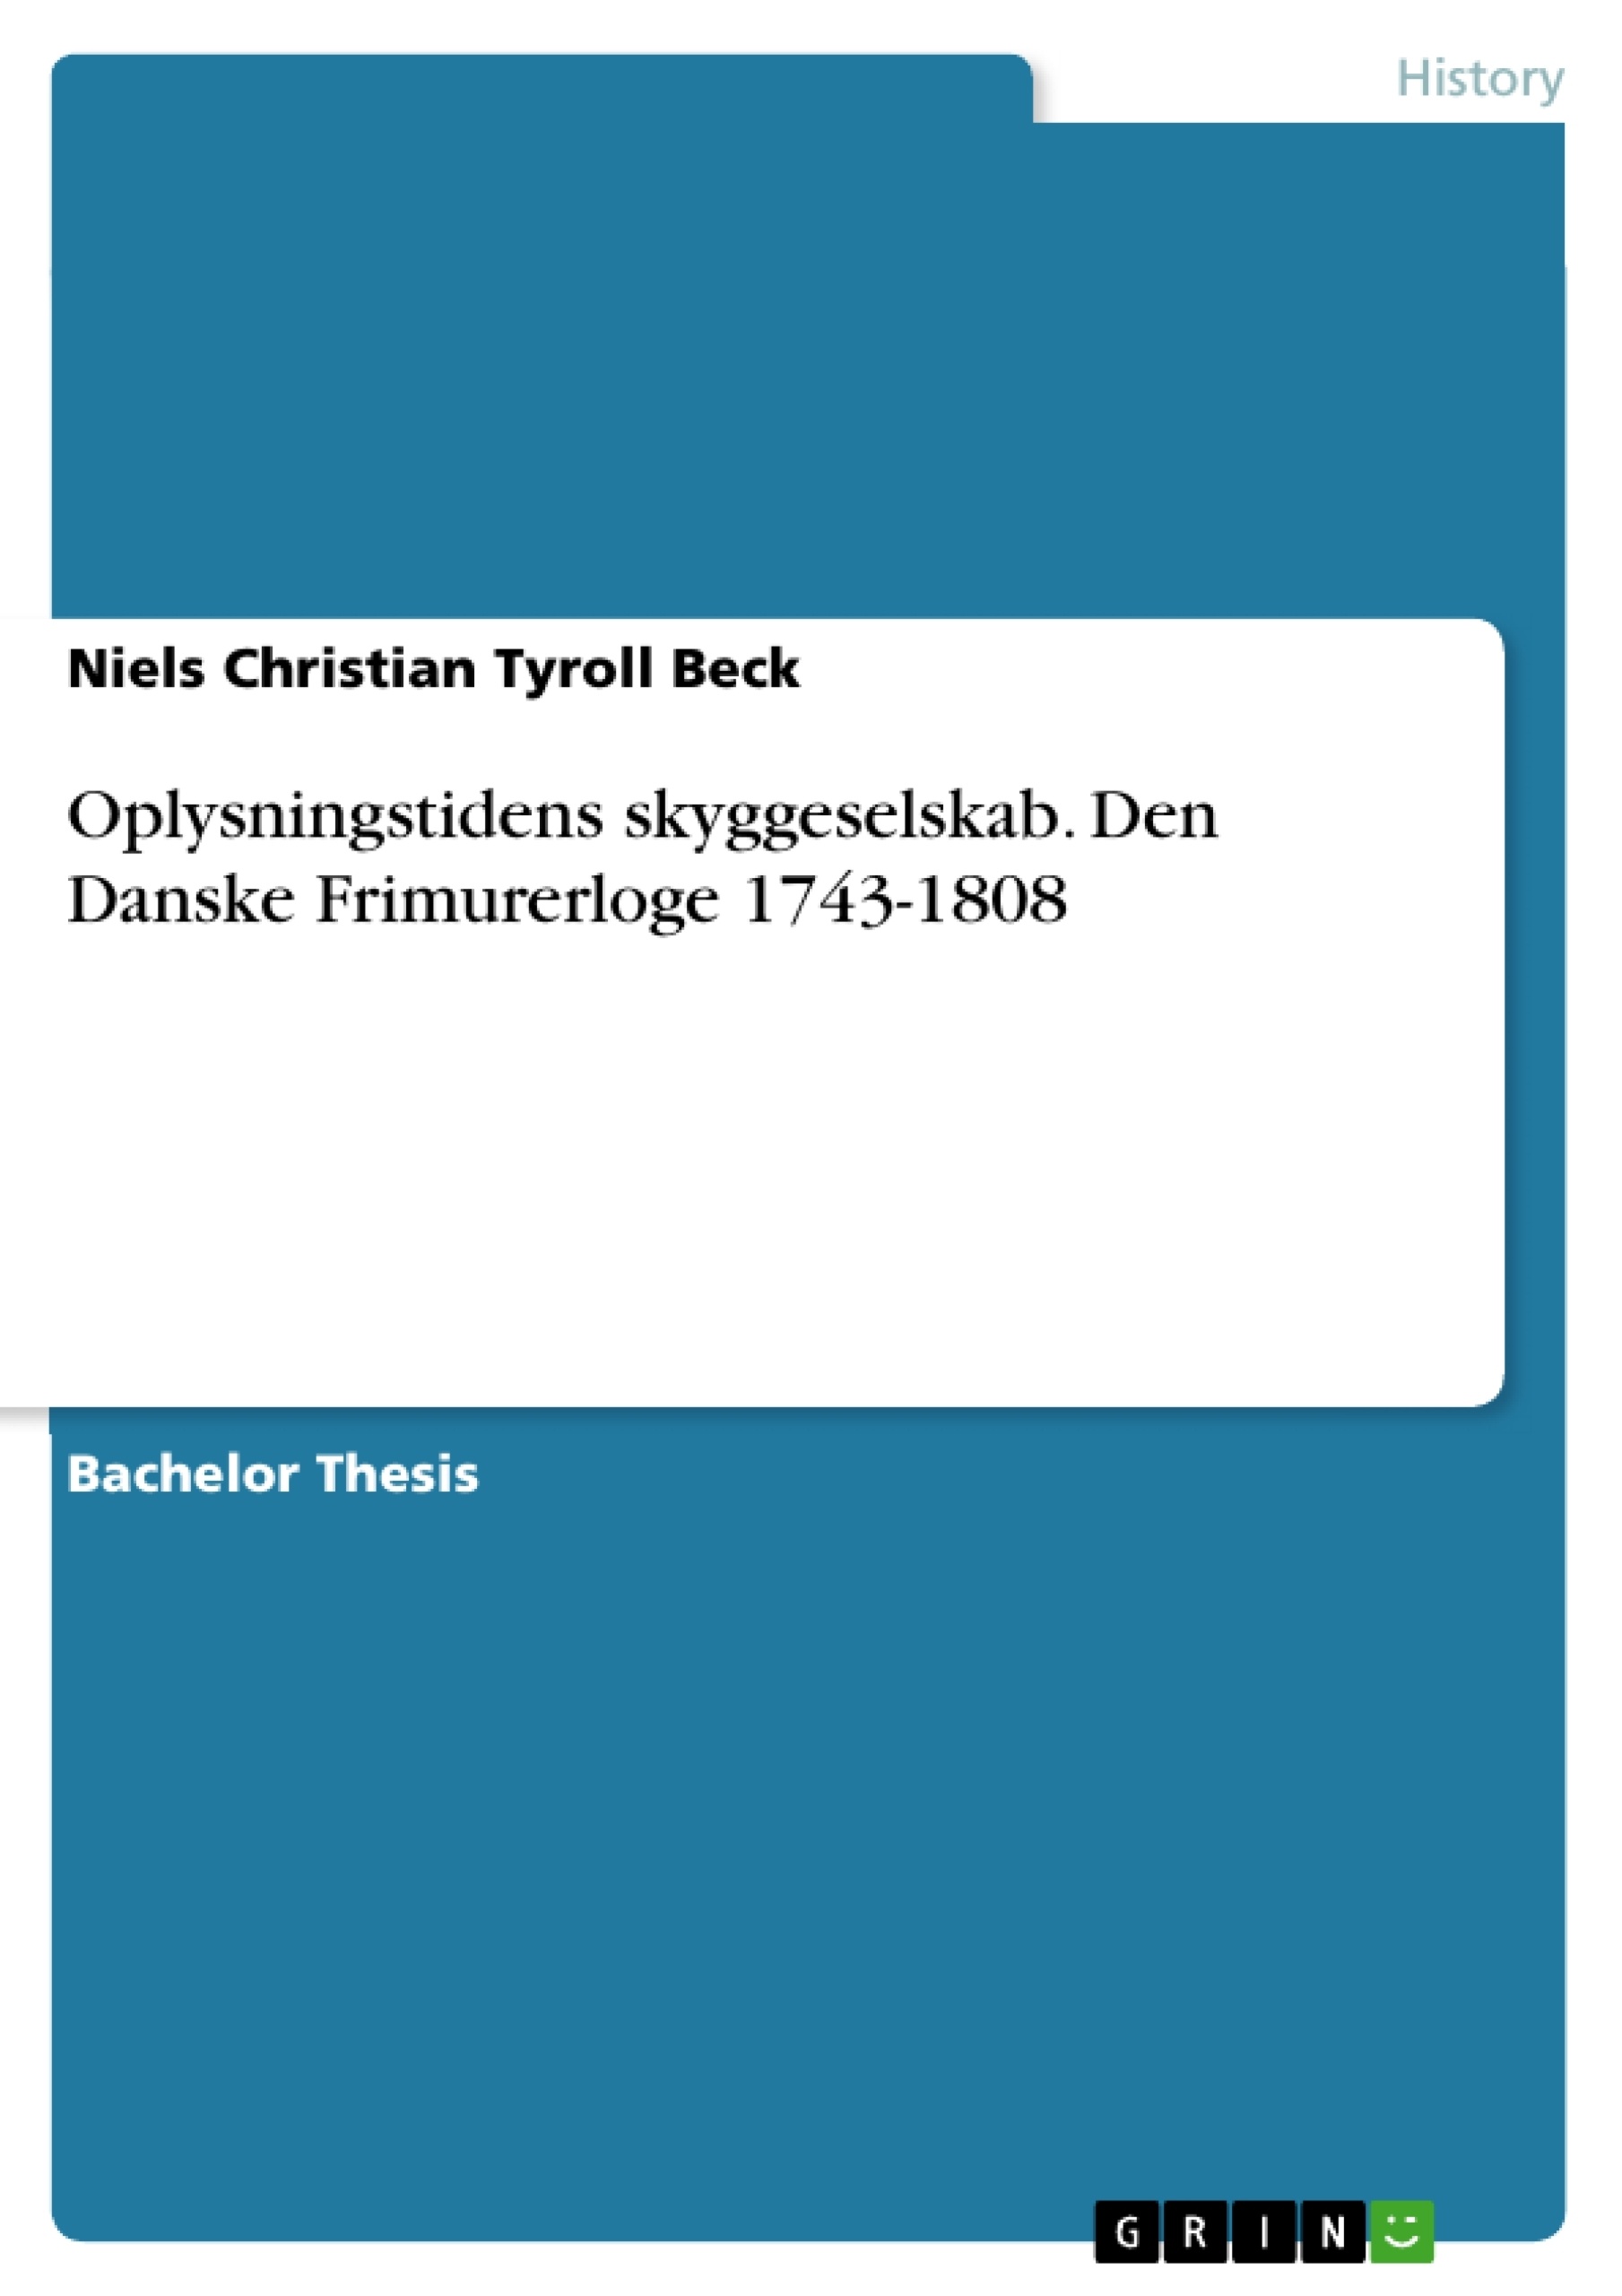 Titre: Oplysningstidens skyggeselskab. Den Danske Frimurerloge 1743-1808